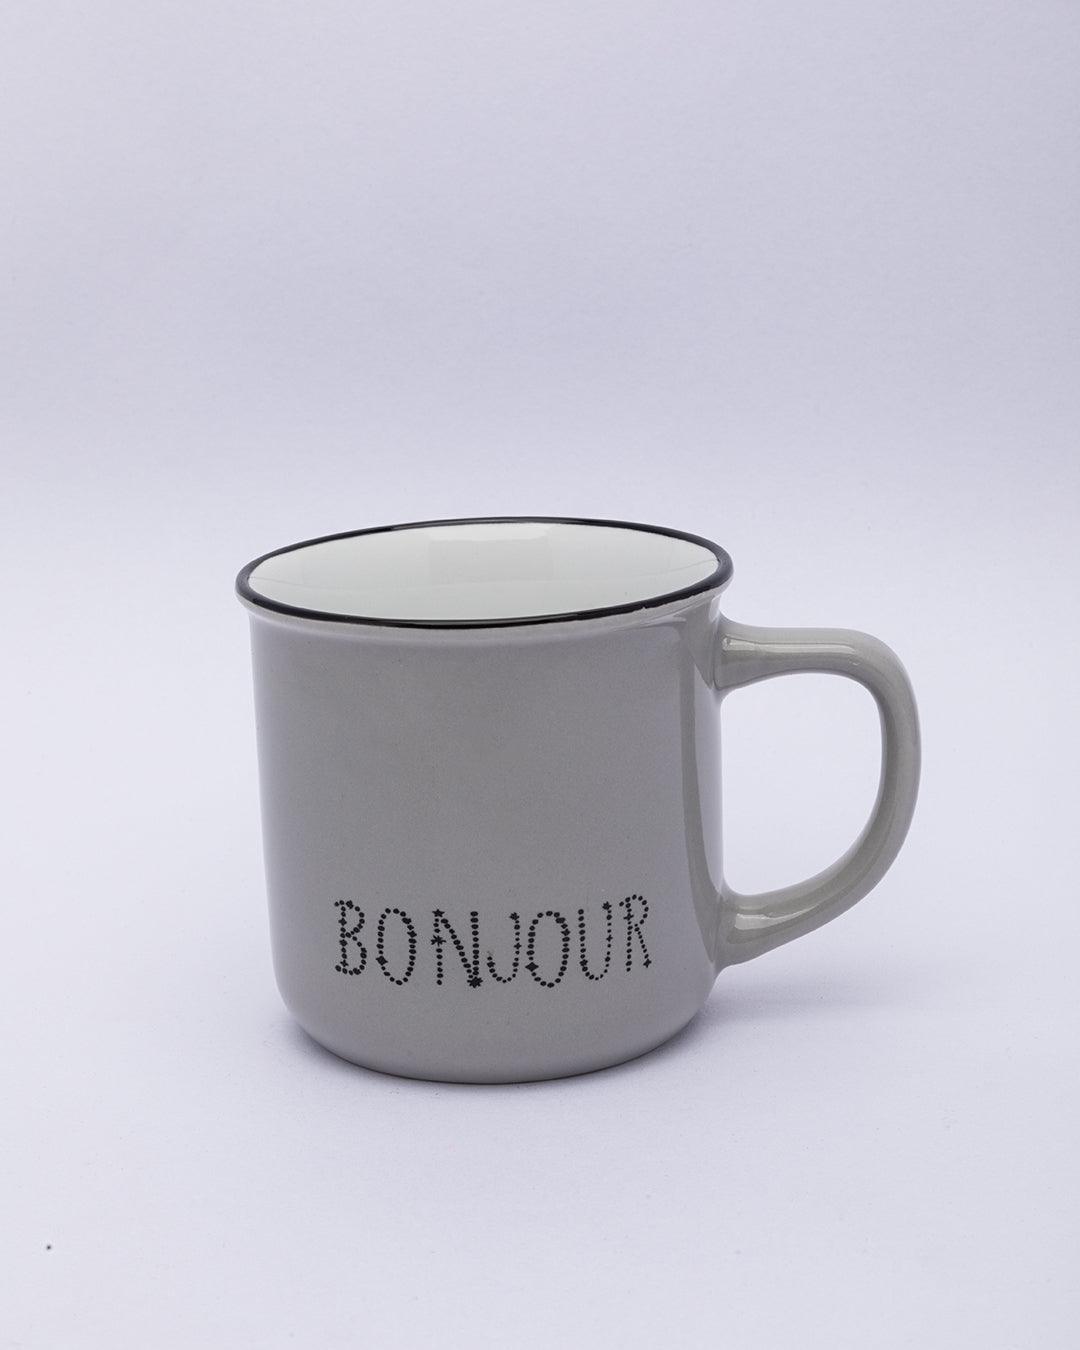 Market99 Mugs, Bonjour, Microwave & Dishwasher Safe, Assorted Colours, Ceramic, 340 mL, Set of 4 - MARKET 99